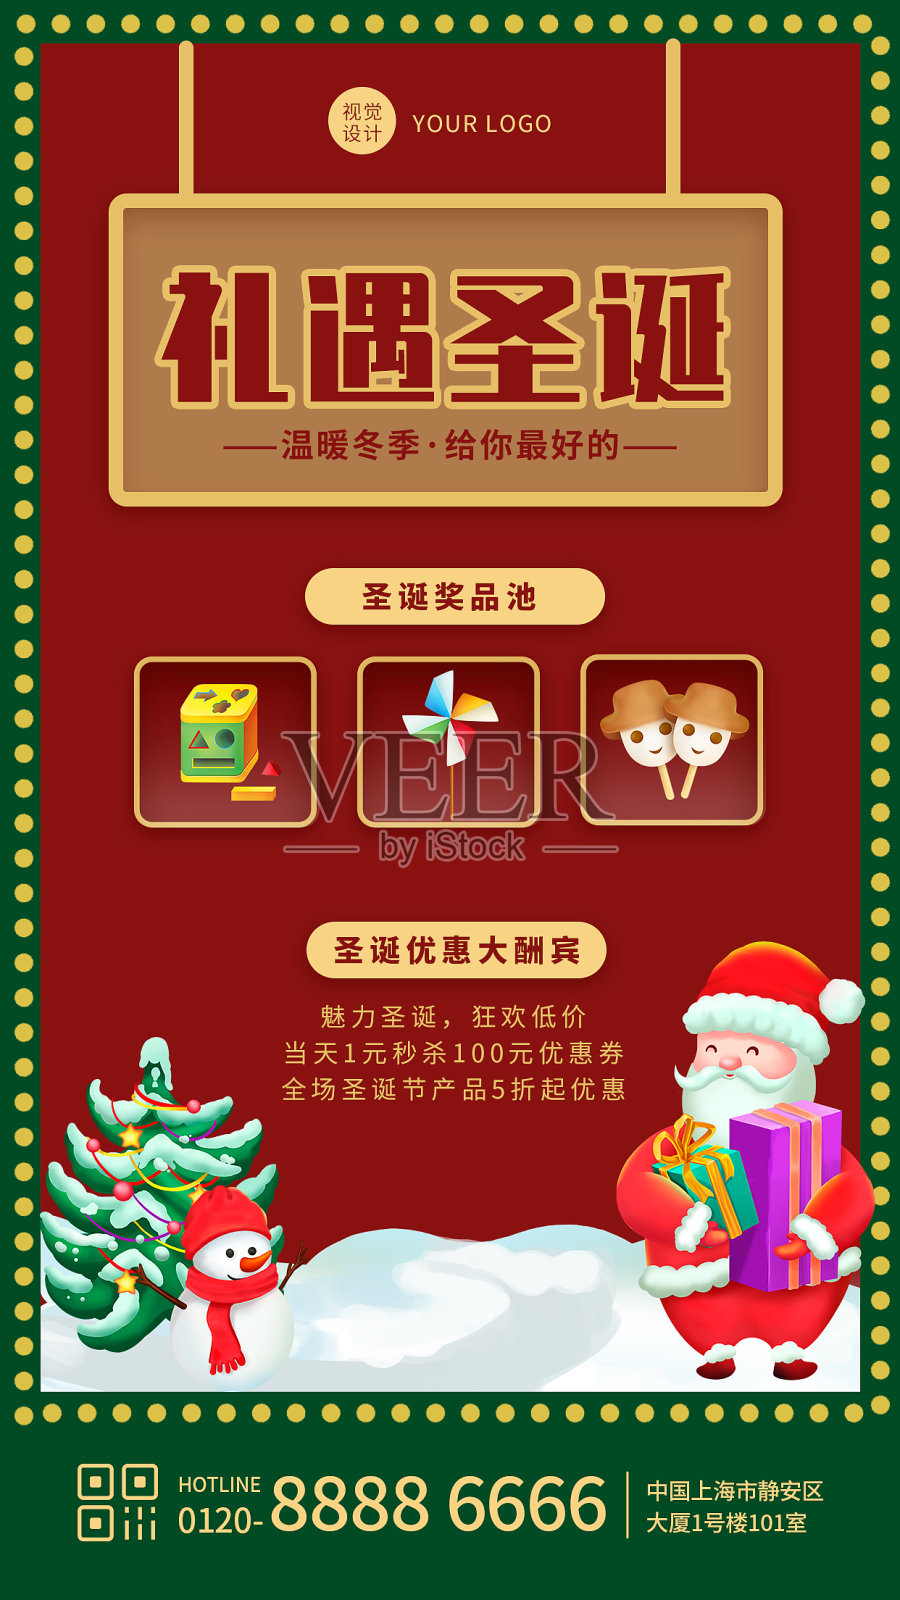 红色复古卡通圣诞节促销手机海报设计模板素材